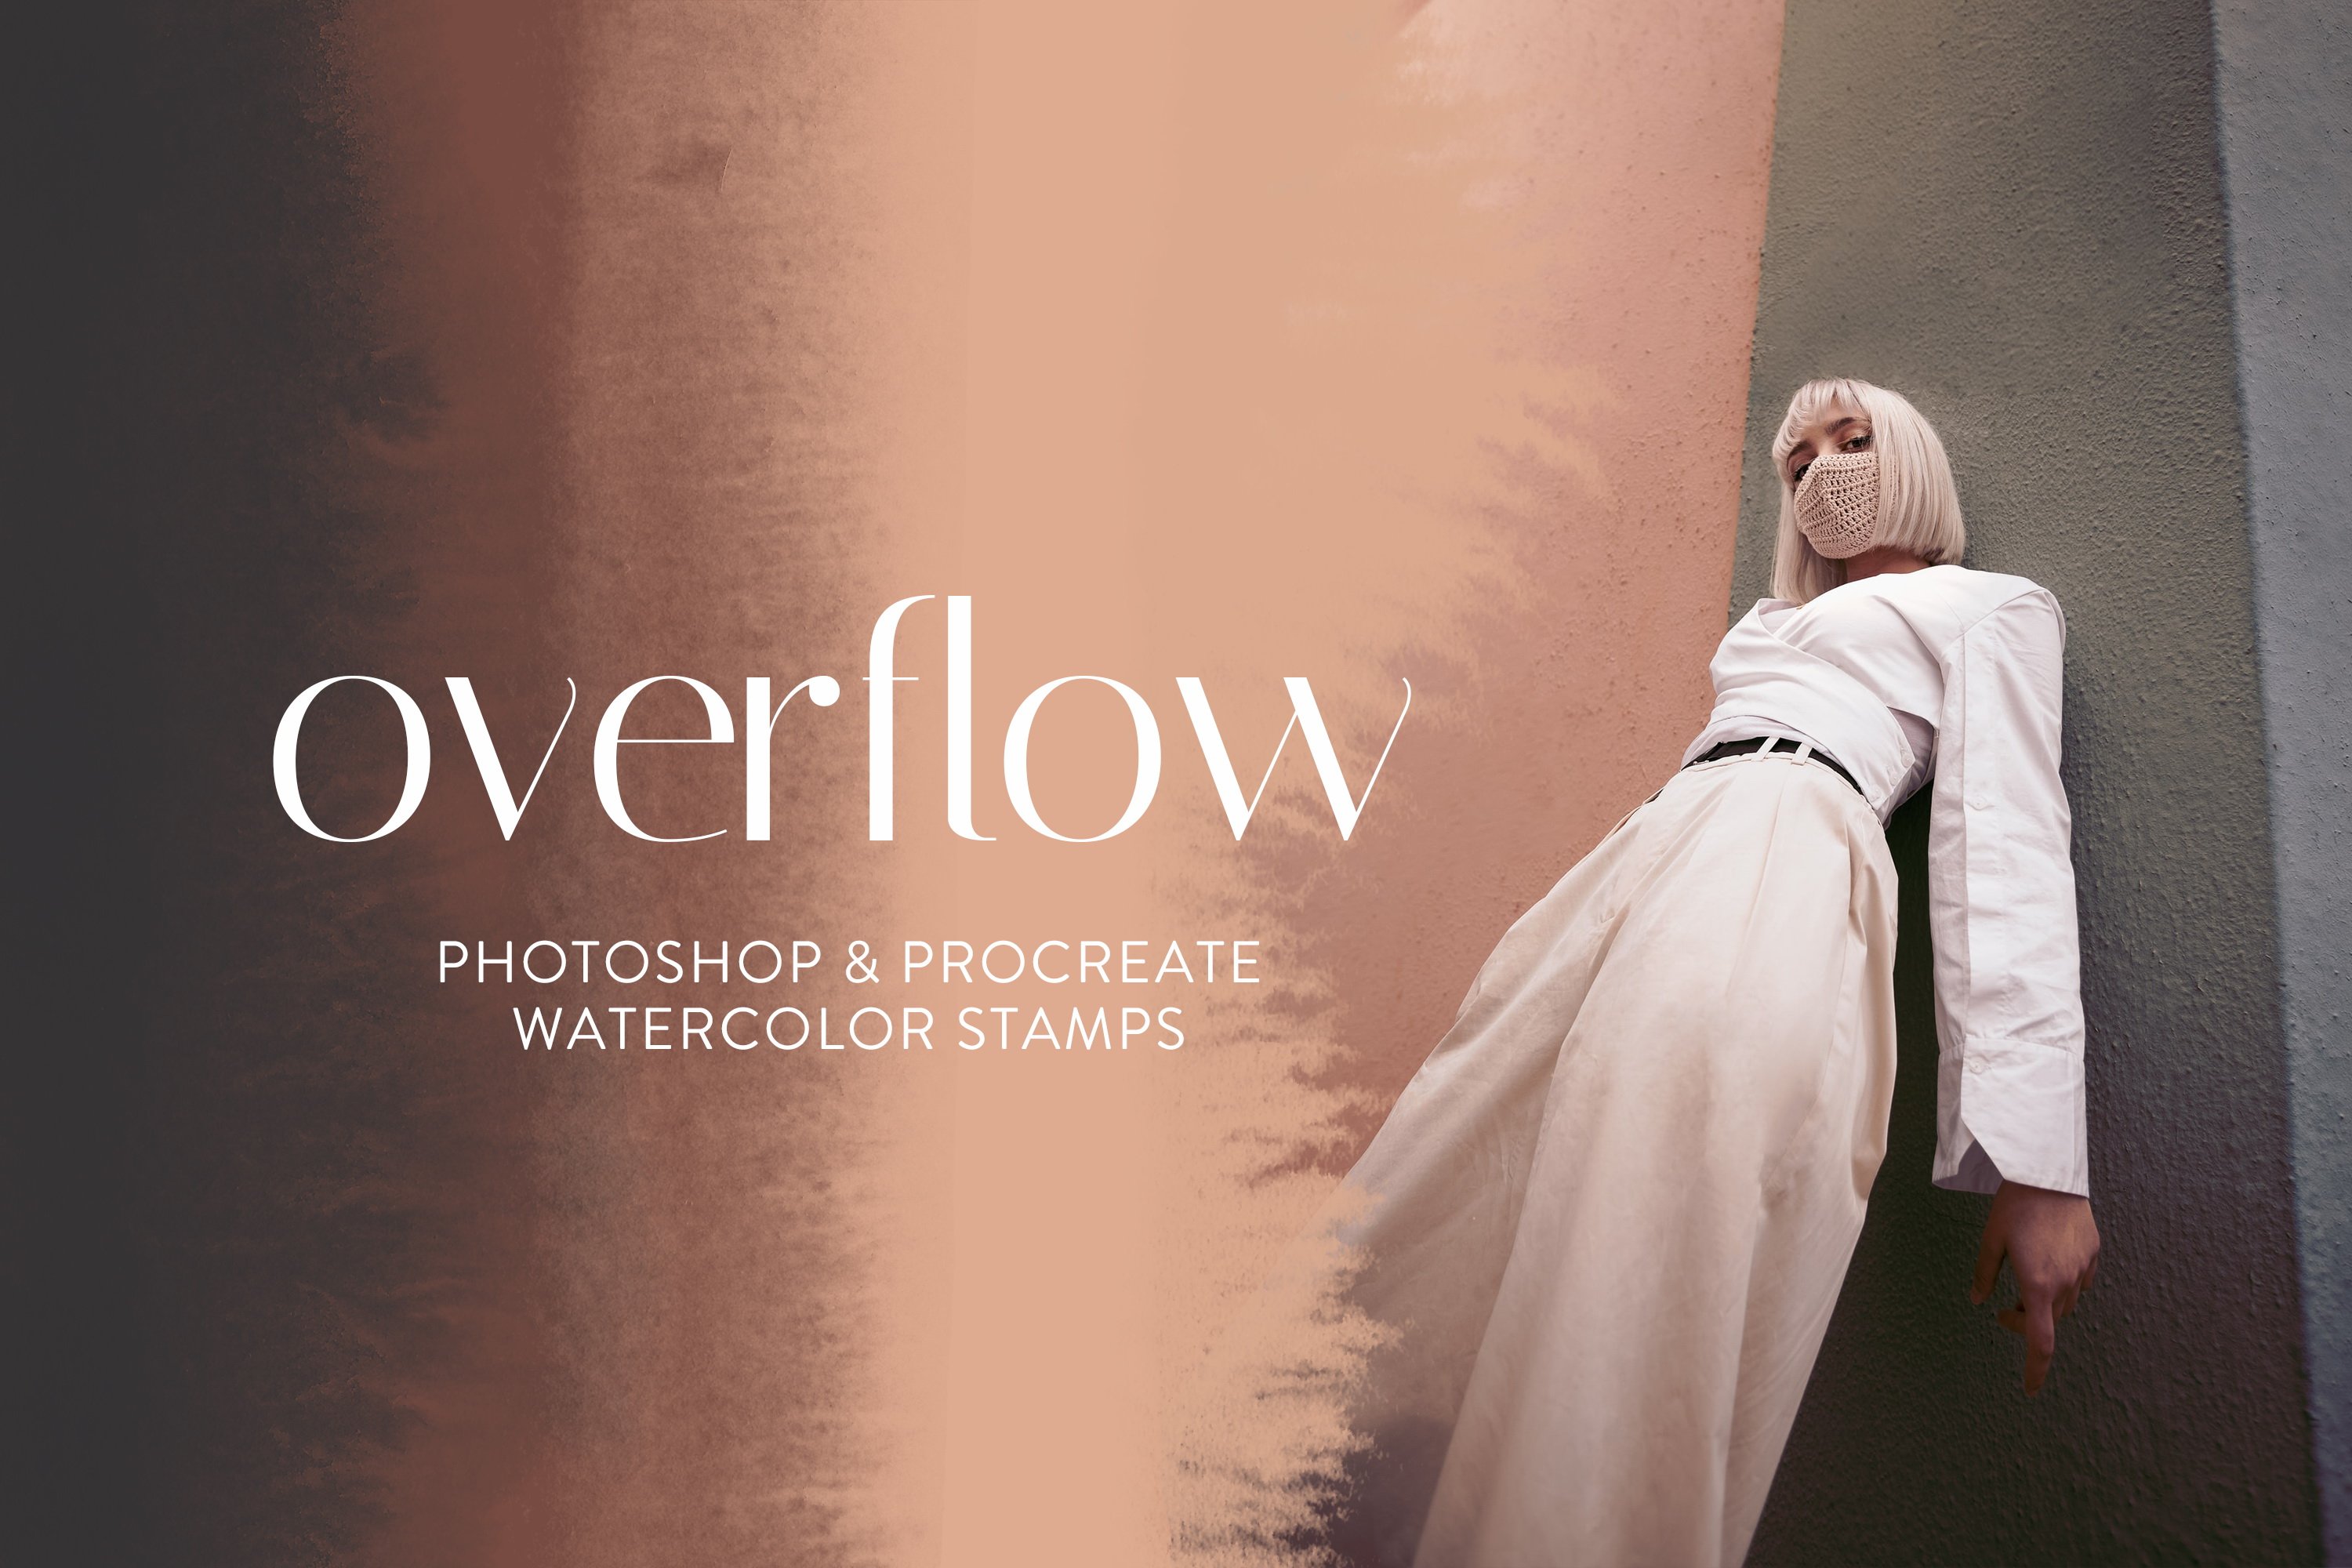 Overflow Photoshop&Procreate Brushescover image.